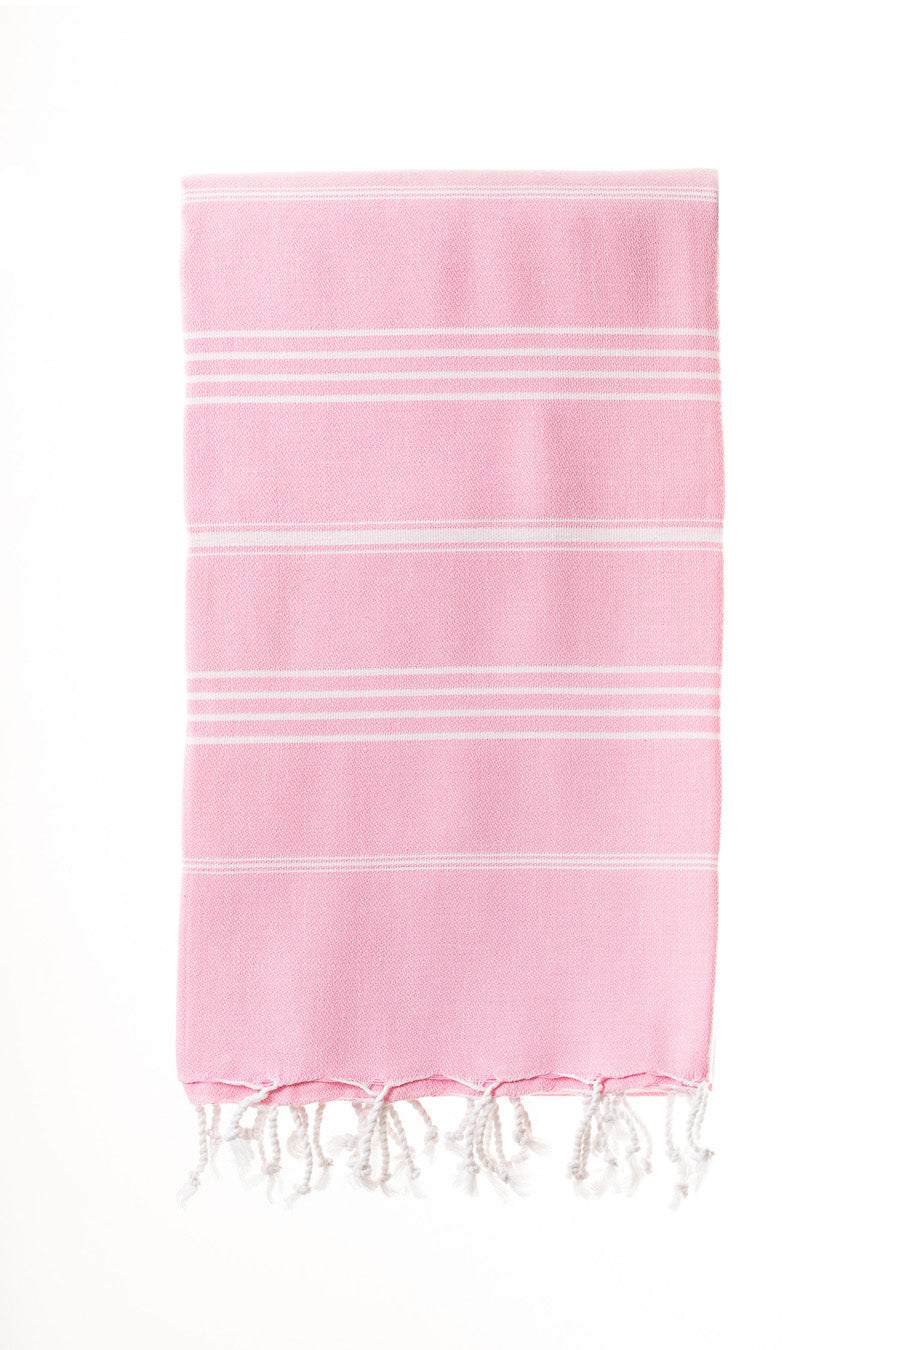 Elim Rose Pink Turkish Towel